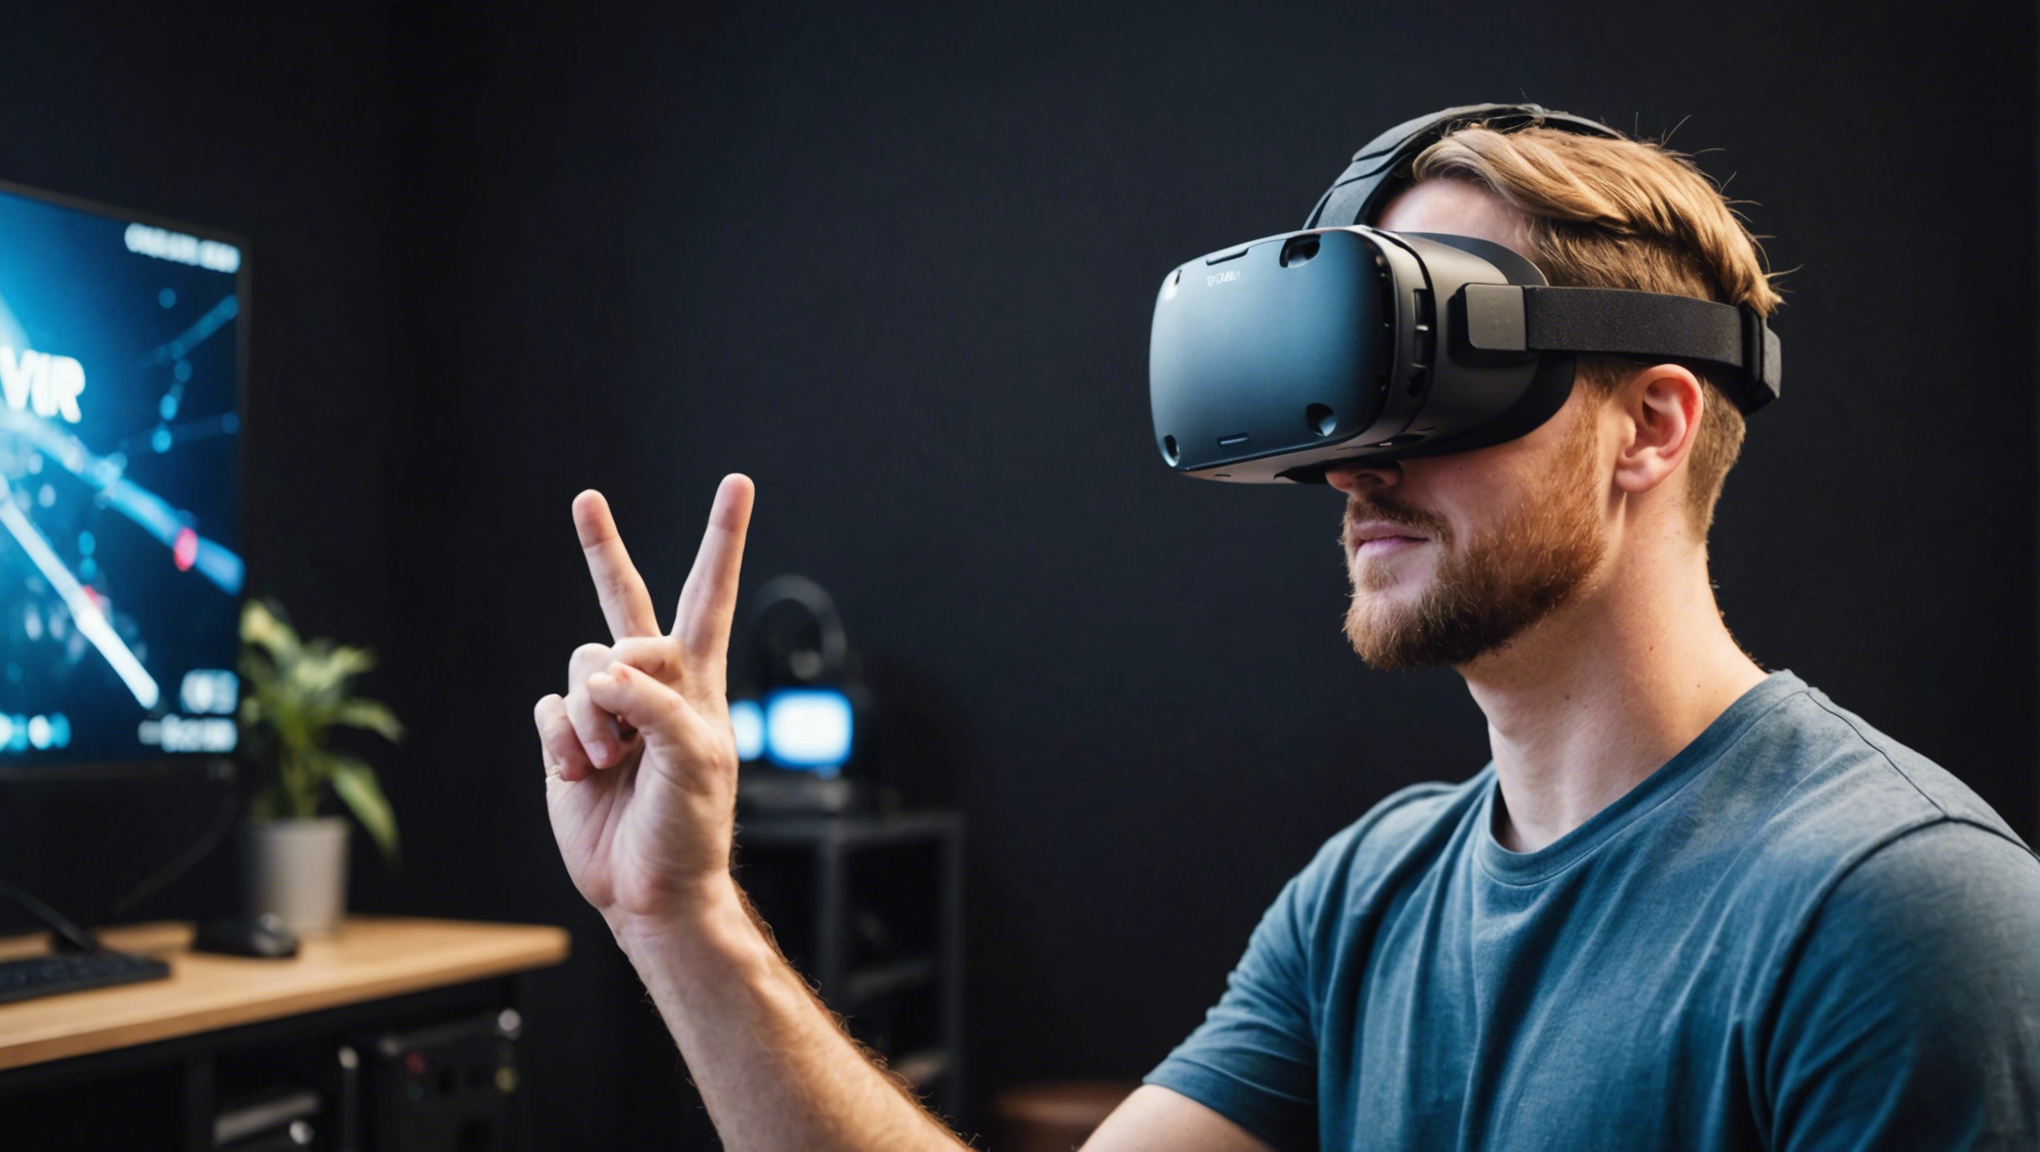 découvrez les avantages des jeux vidéo en réalité virtuelle (vr) et plongez dans des expériences immersives uniques. profitez de sensations inédites et explorez des mondes virtuels fascinants.